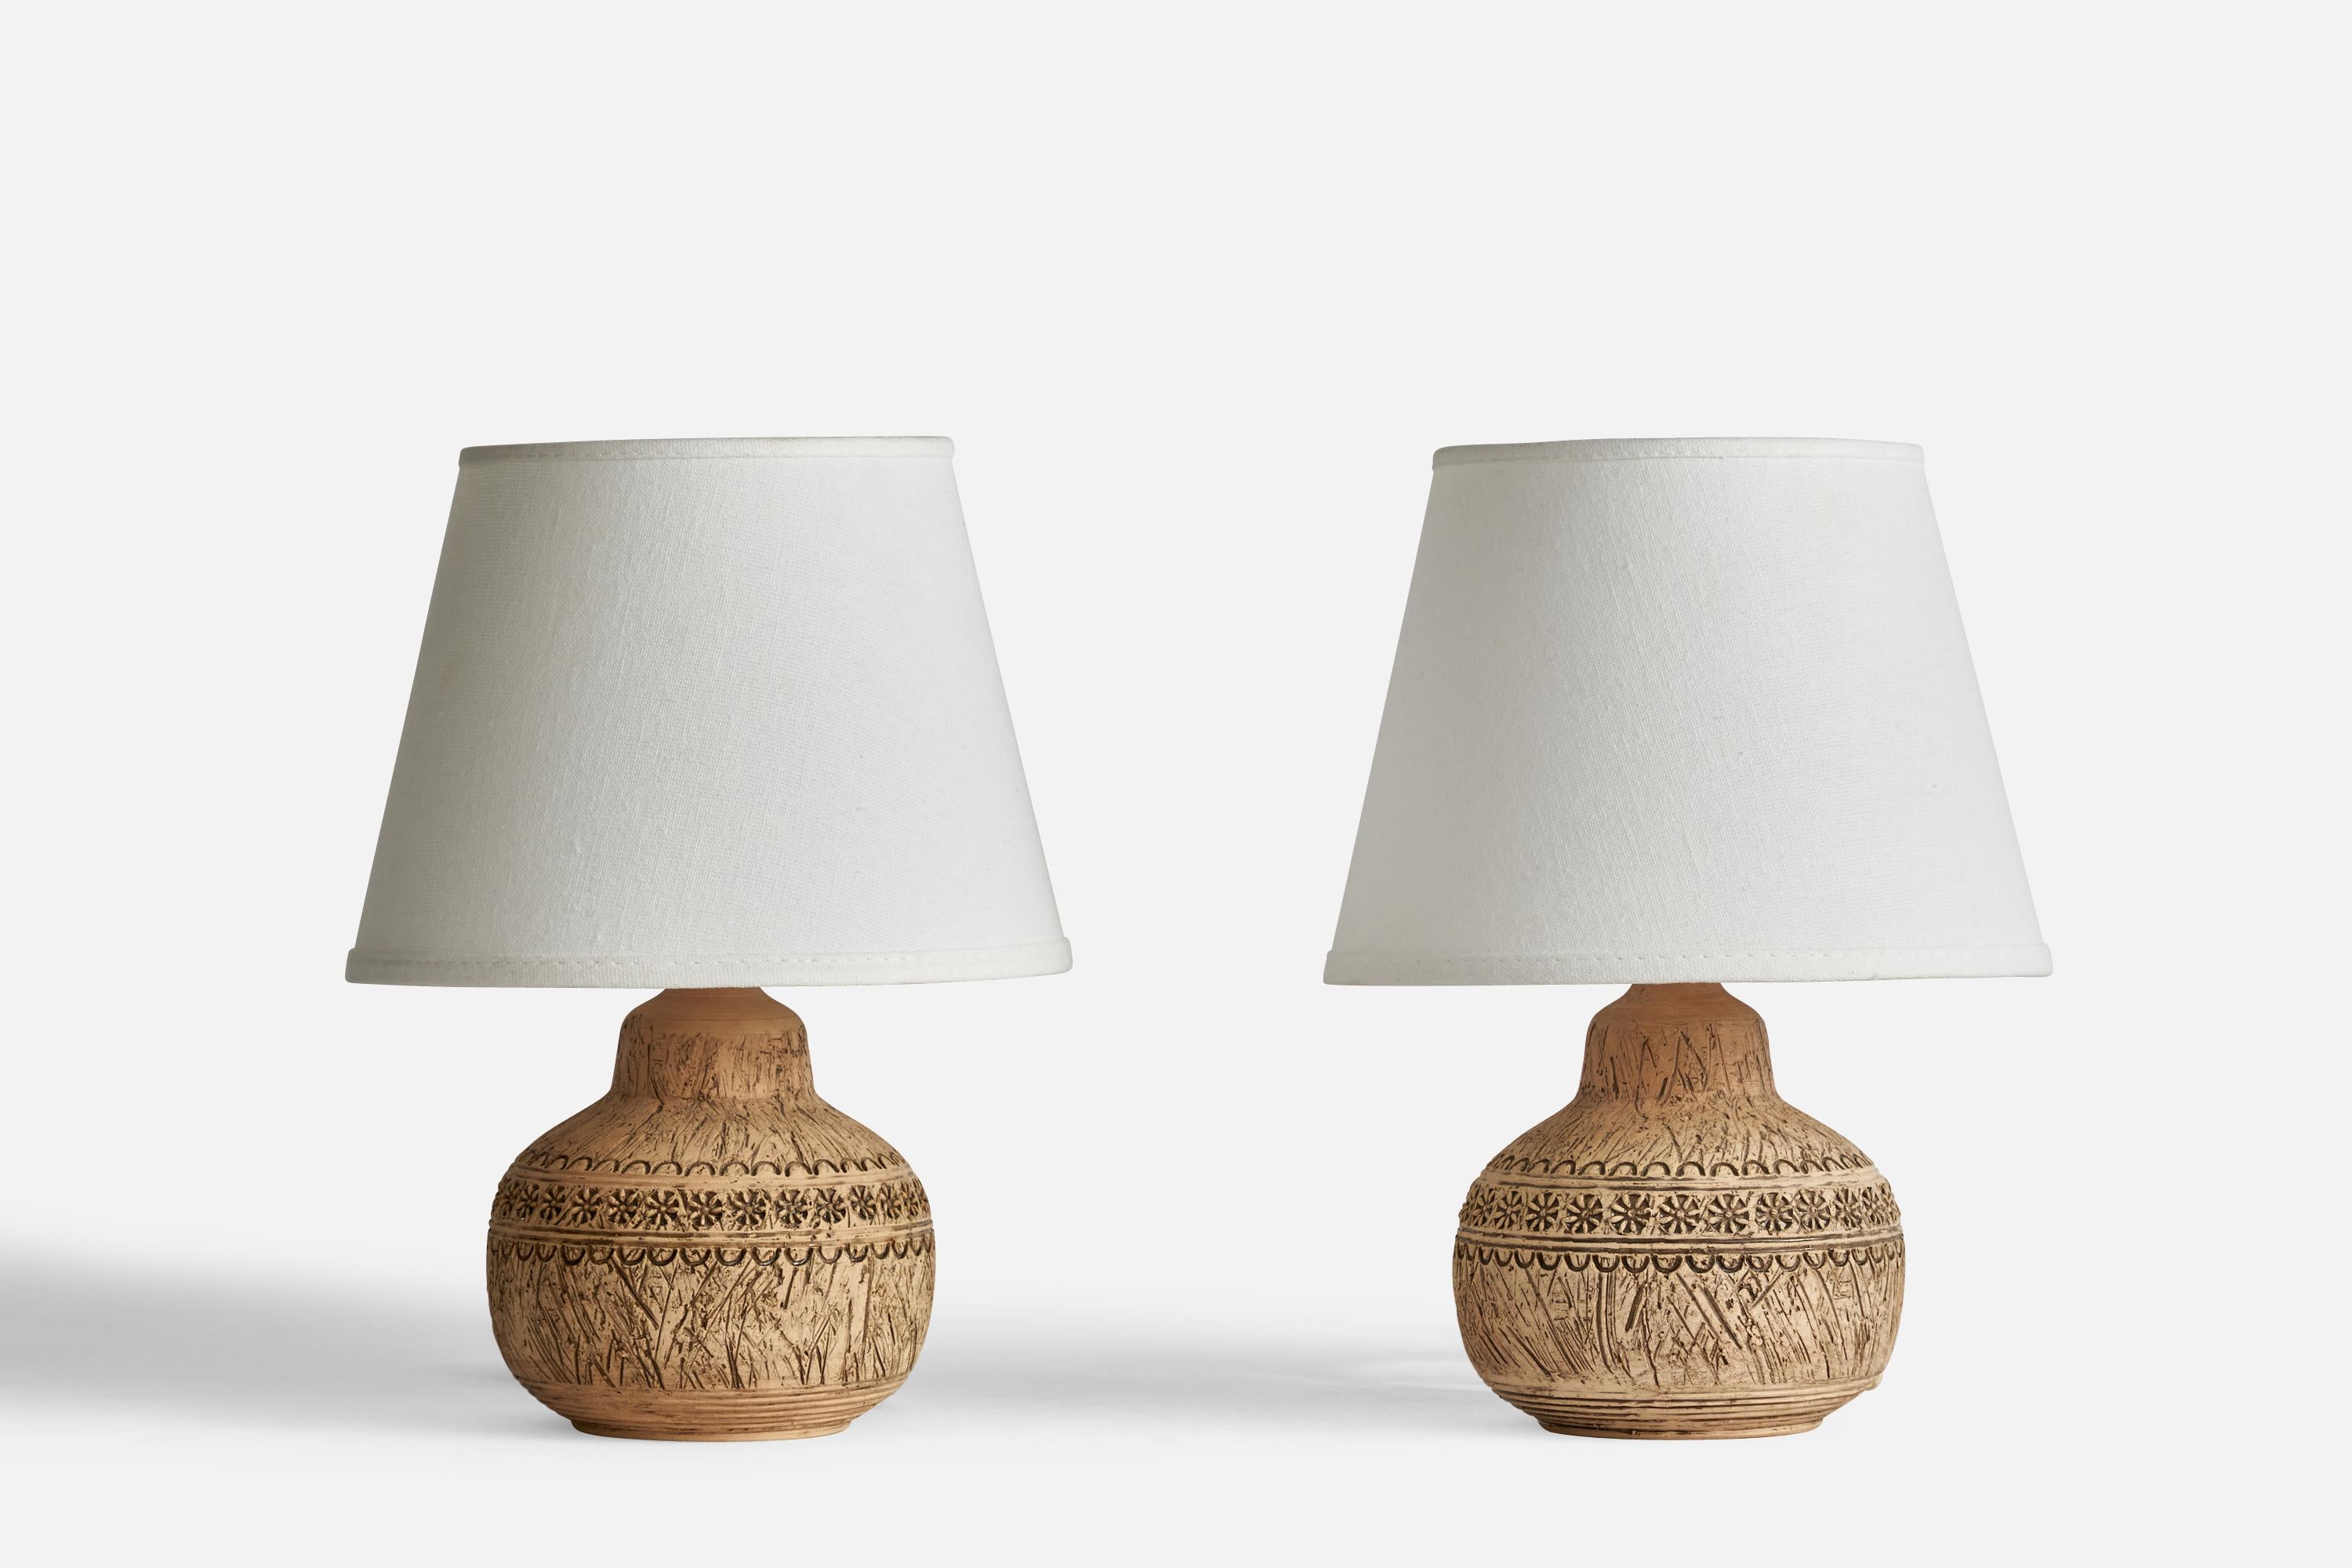 Paire de lampes de table conçues et produites par Keramik Olle, Gränna, Suède, C.C..

Dimensions de la lampe (pouces) : 7.25